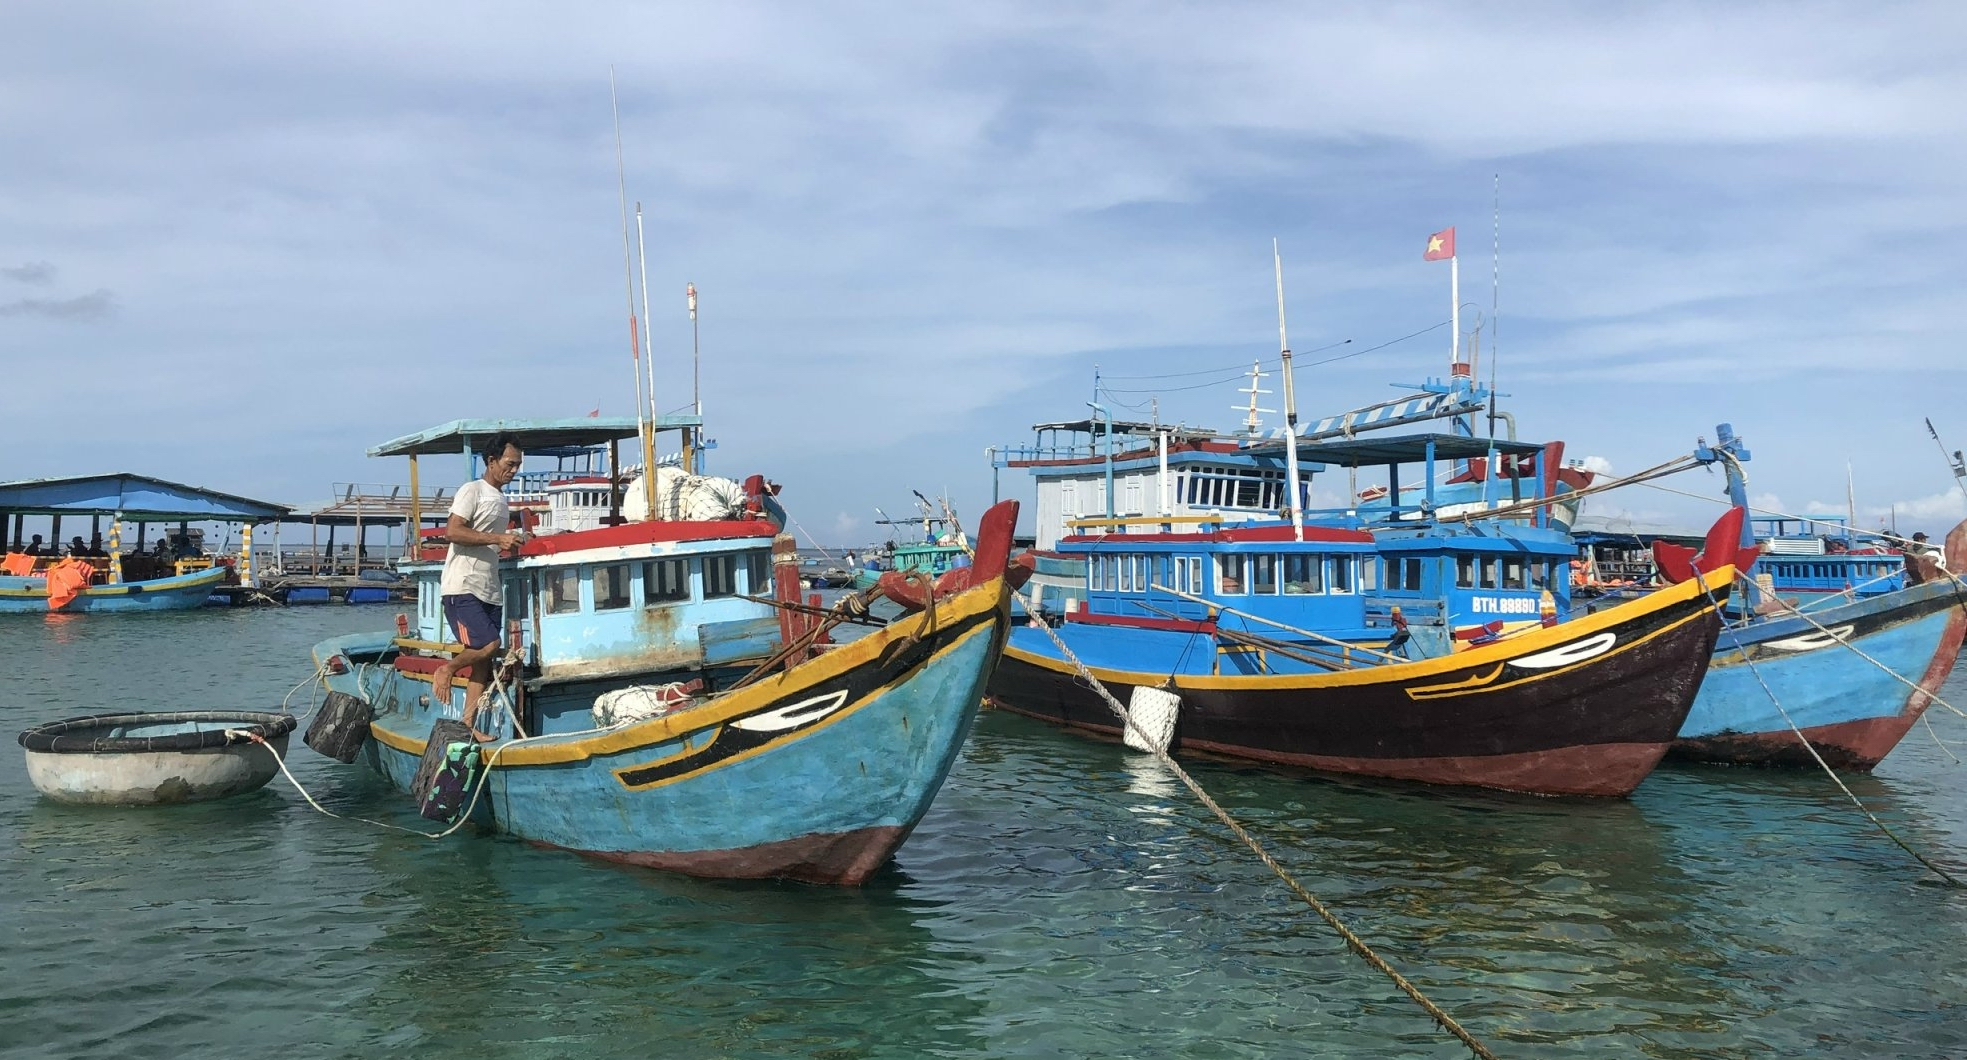 Thanh tra Ủy ban Châu Âu sẽ kiểm tra chống khai thác hải sản bất hợp pháp ở Bình Thuận - Ảnh 2.